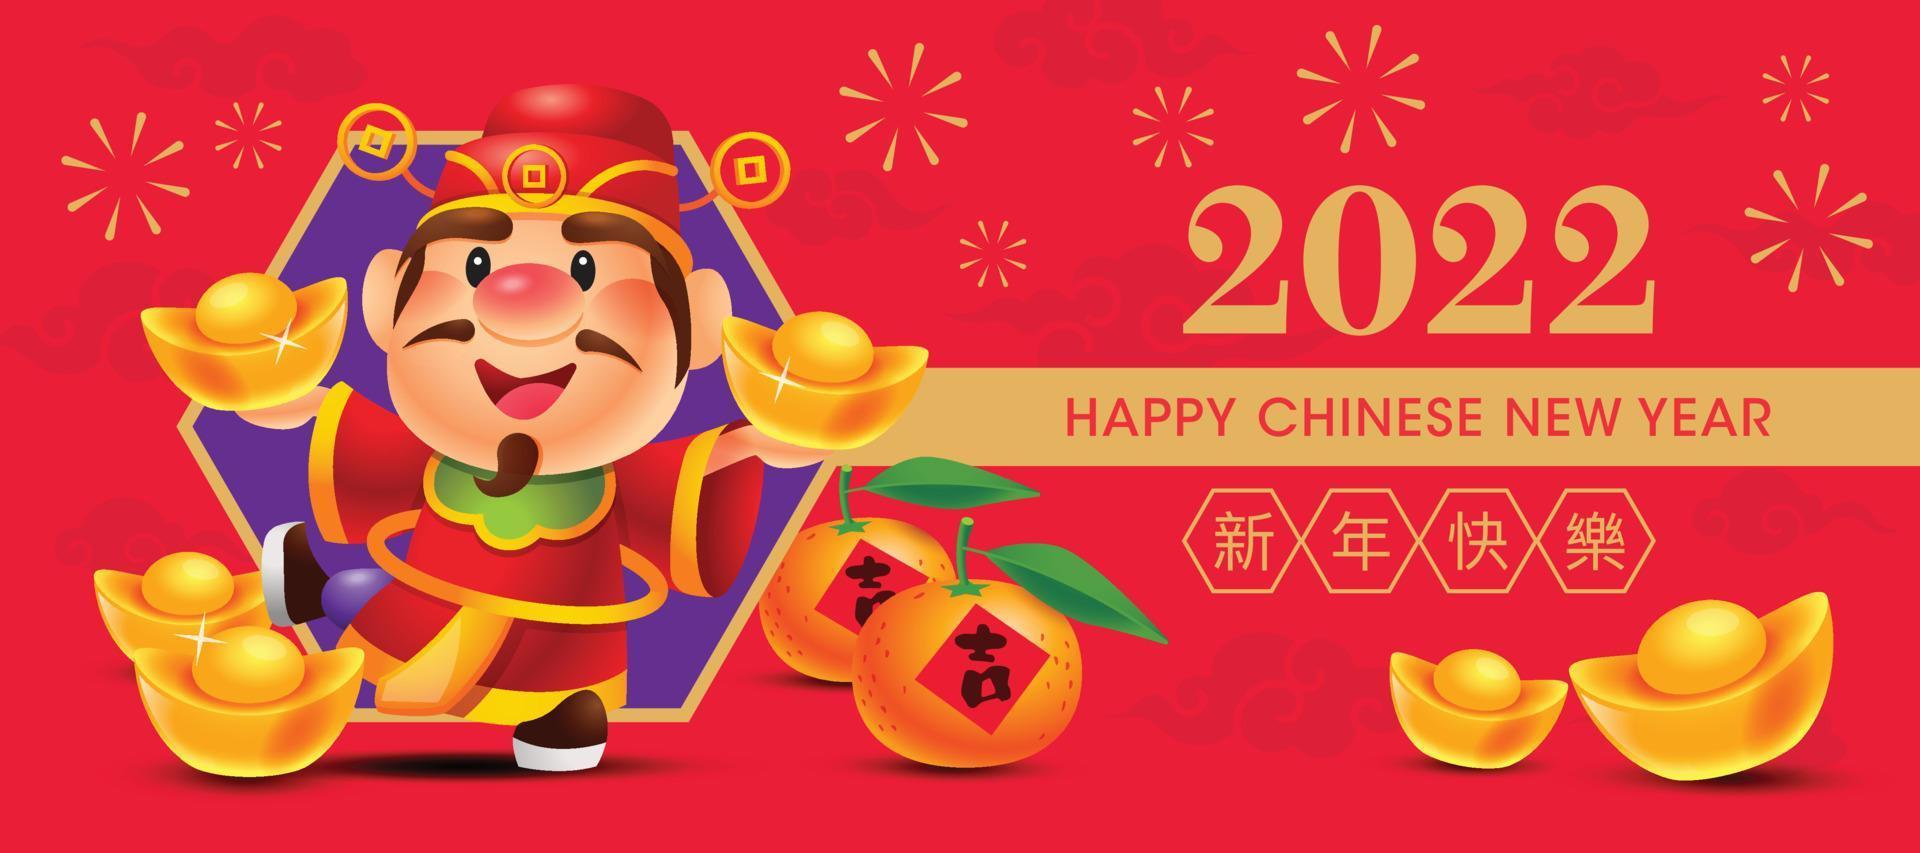 kinesiskt nyår 2022 gratulationskort med rikedomens gud rymmer guldtackor. mandarin apelsiner och guldtackor visas på marken. lyckligt guld av rikedomskaraktär vektor